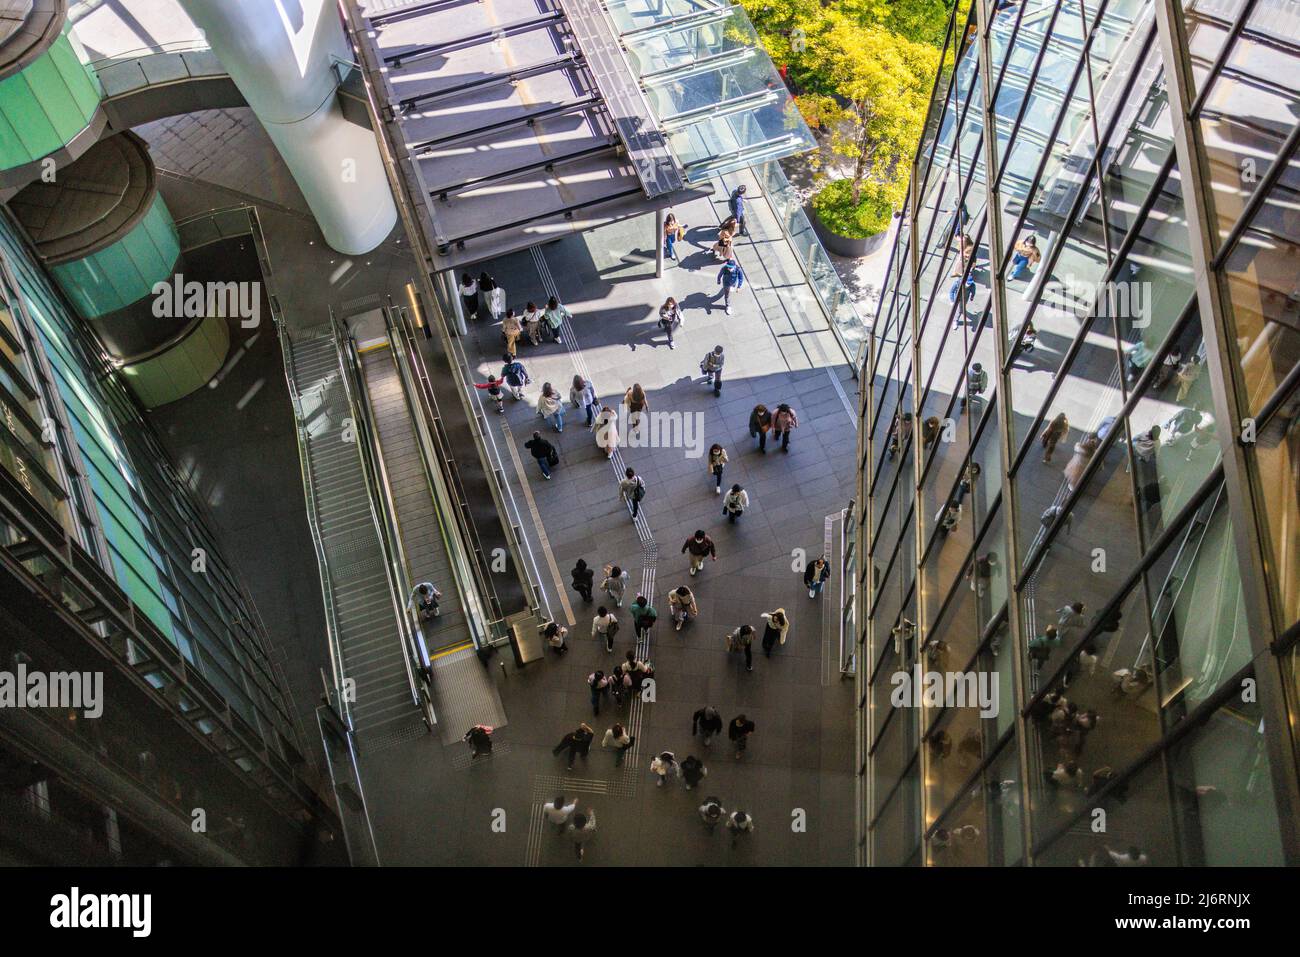 Overhead view of people walking between modern buildings Stock Photo